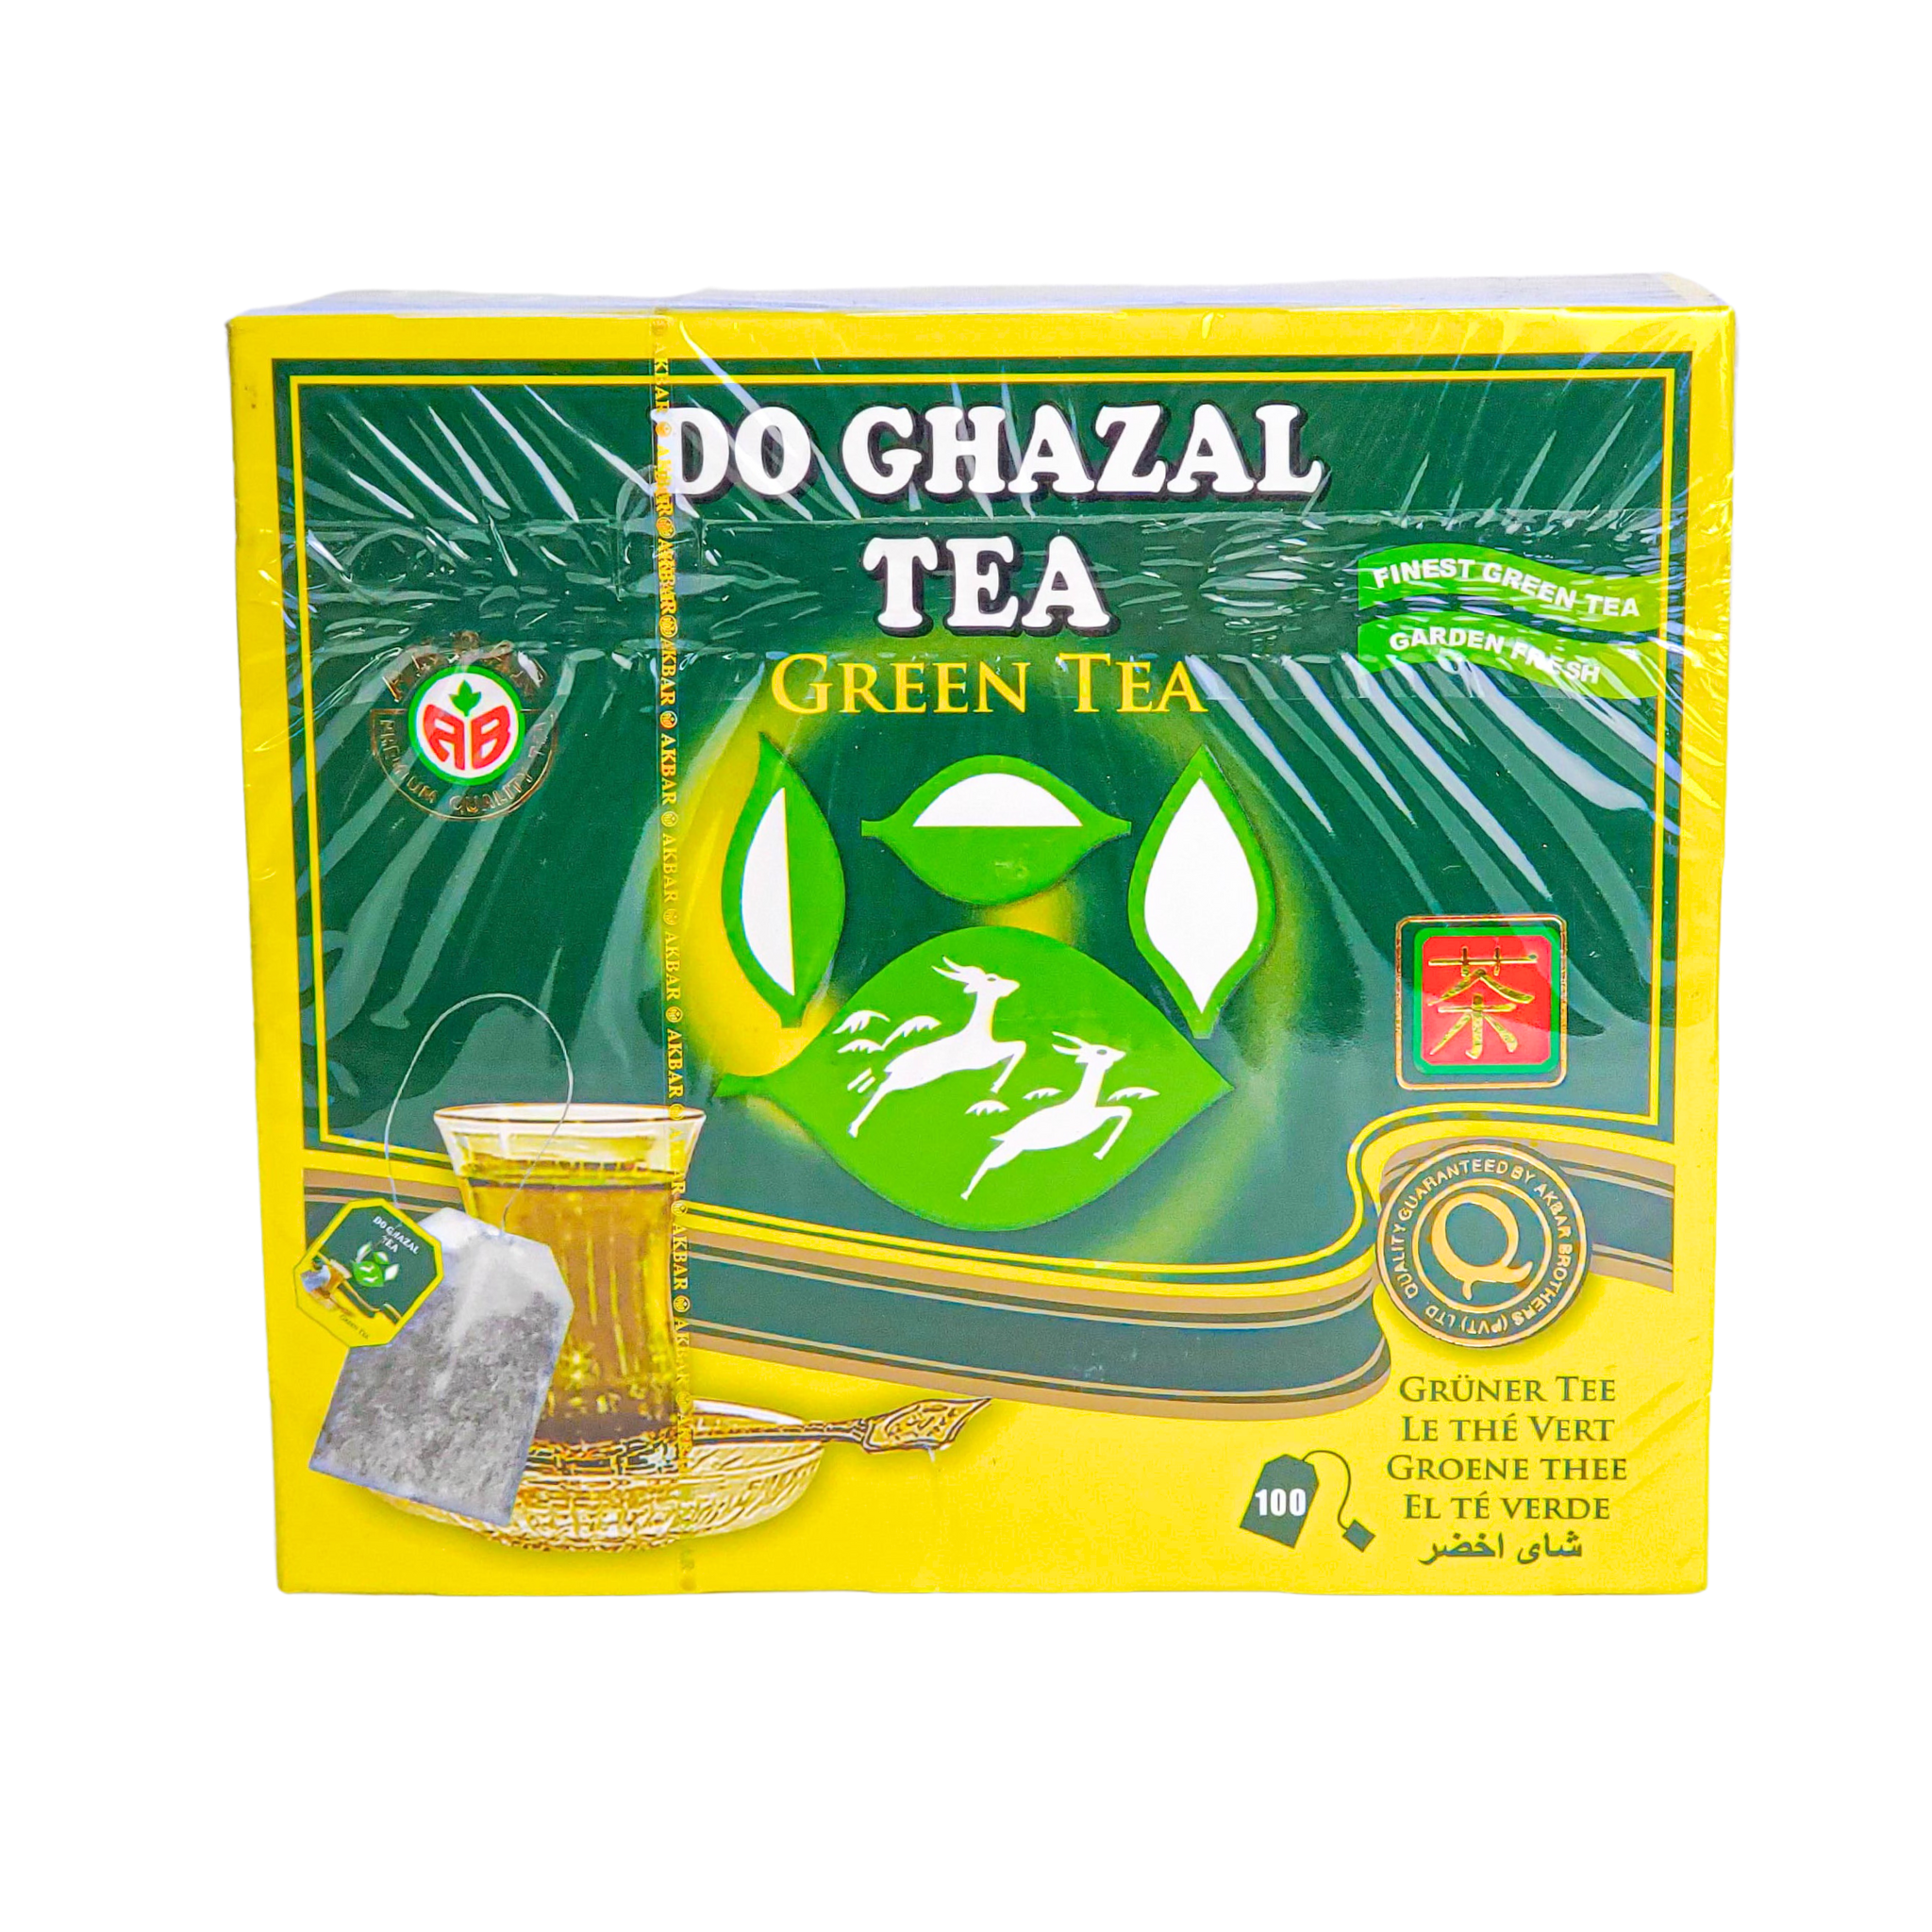 Do Ghazal Tea Finest Green Tea 100 tea bags Quality